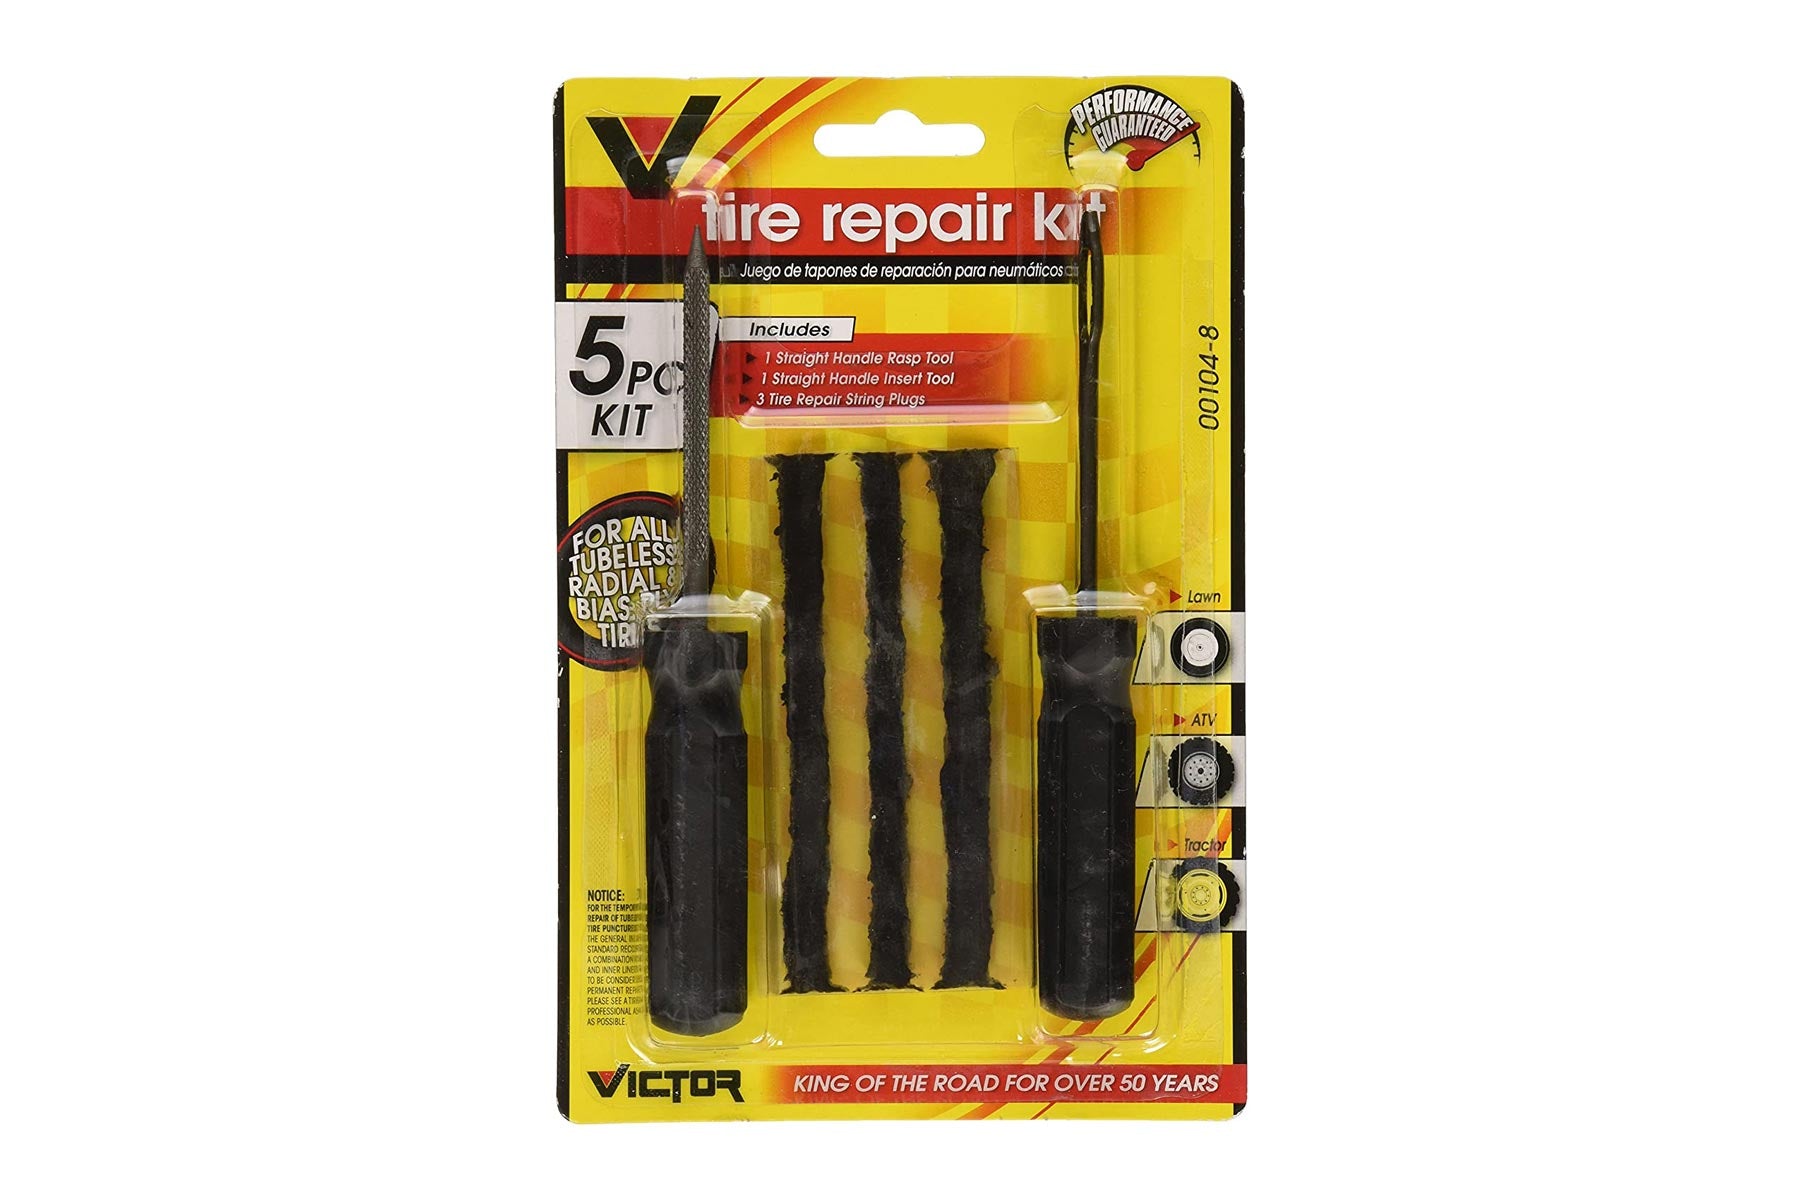 Tubeless Tyre Repair Kit